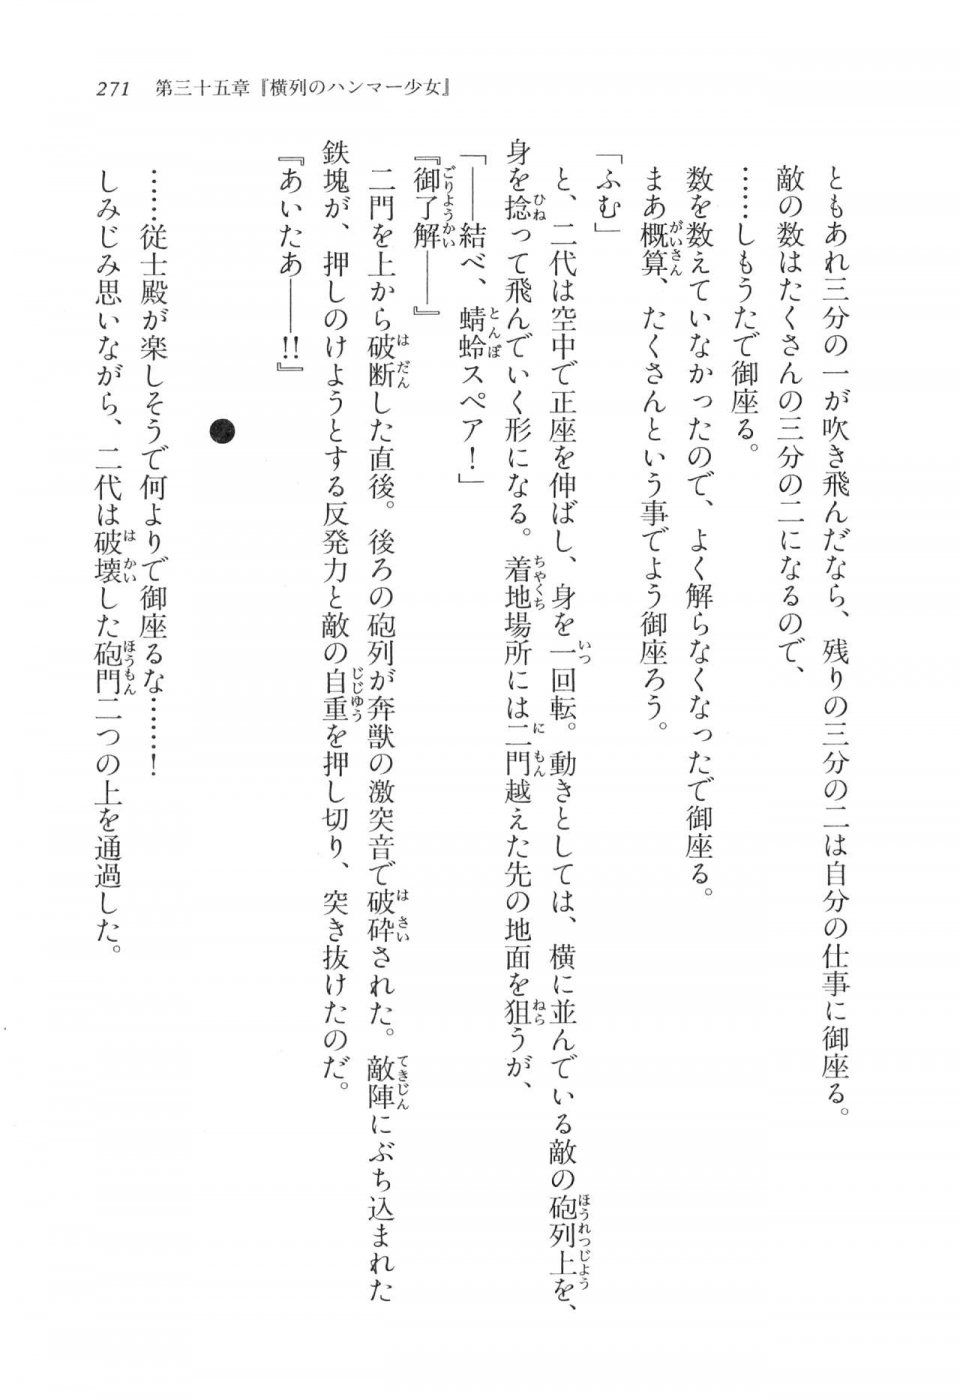 Kyoukai Senjou no Horizon LN Vol 17(7B) - Photo #271